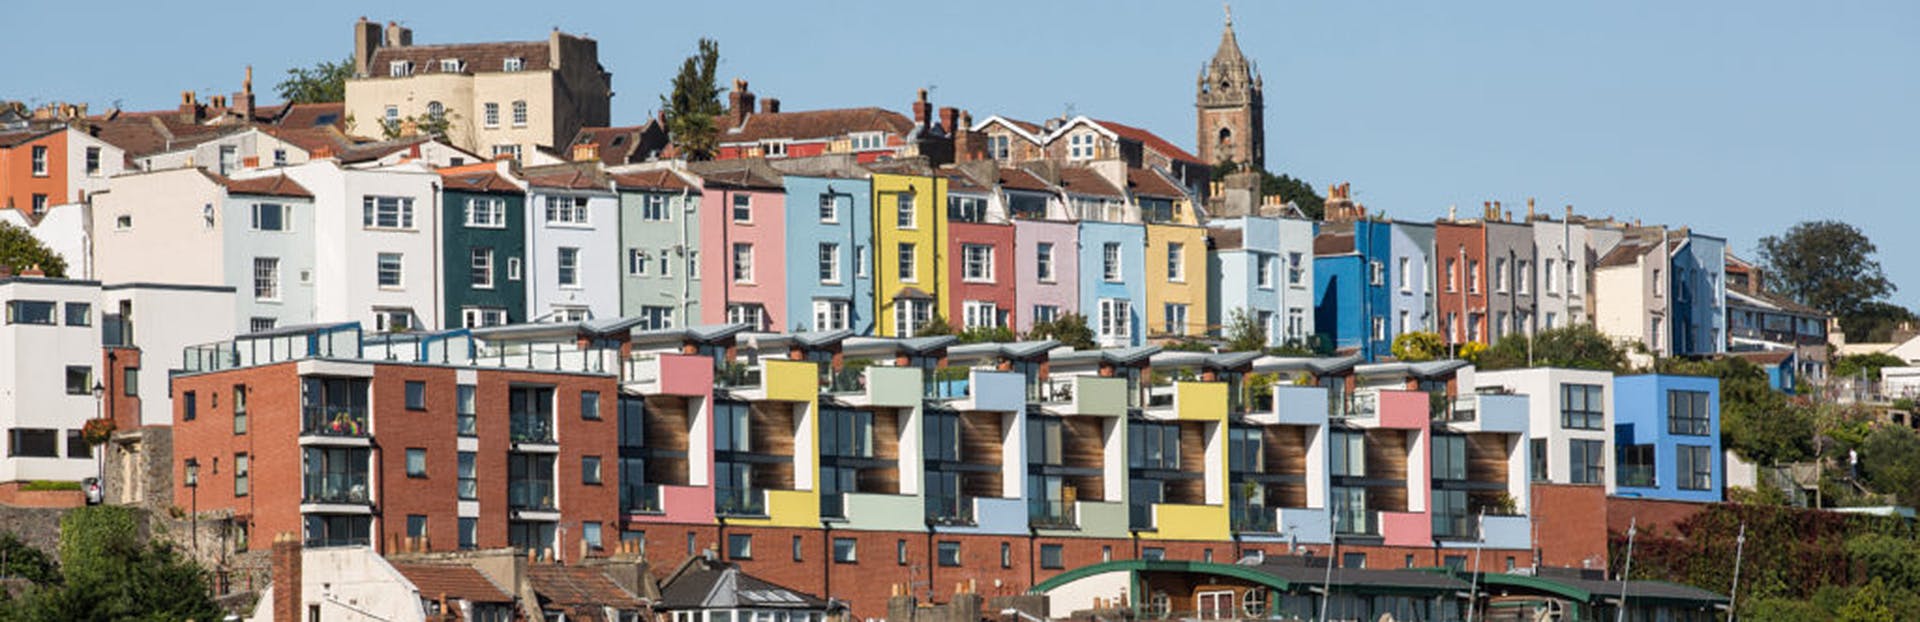 Entdecken Sie das Beste der Altstadt von Bristol bei einer selbstgeführten Audiotour